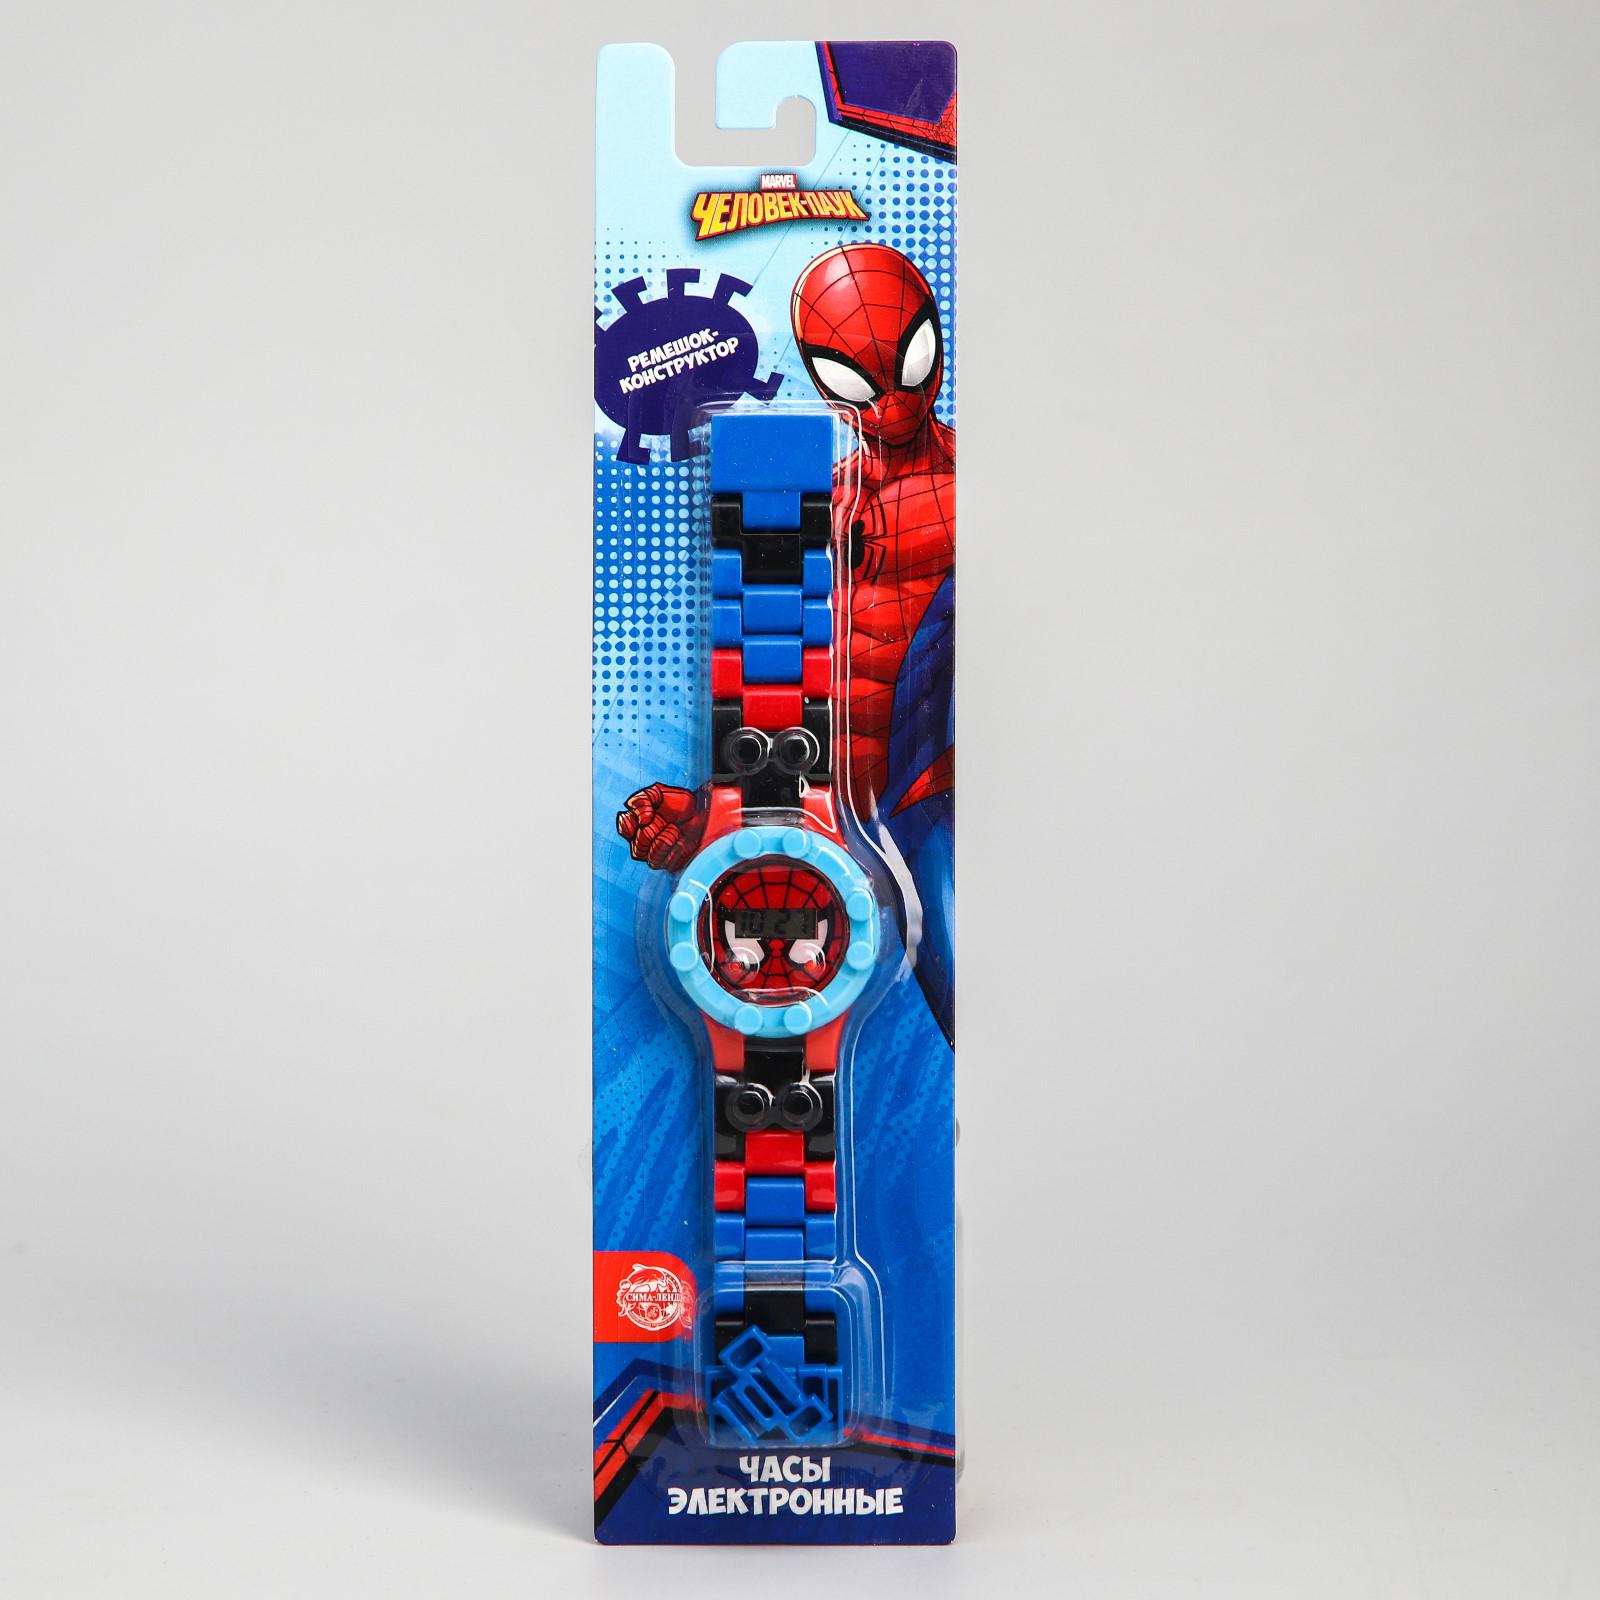 Часы MARVEL наручные лего Человек-паук с ремешком-конструктором - фото 5